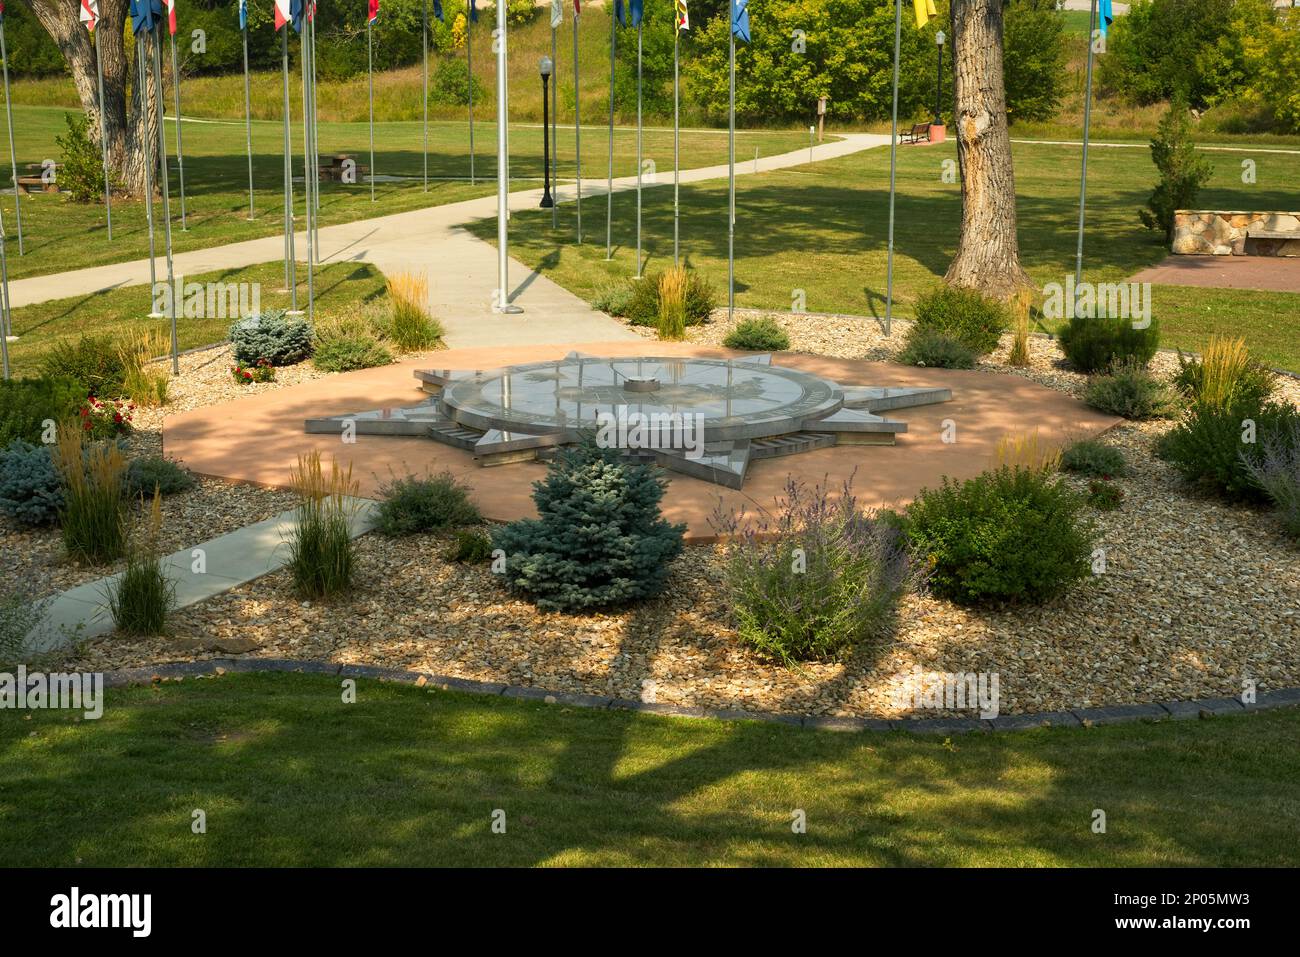 Das Denkmal, das symbolisch das geografische Zentrum der Vereinigten Staaten kennzeichnet, liegt in einem ruhigen Park in Belle Fourche, South Dakota. Stockfoto